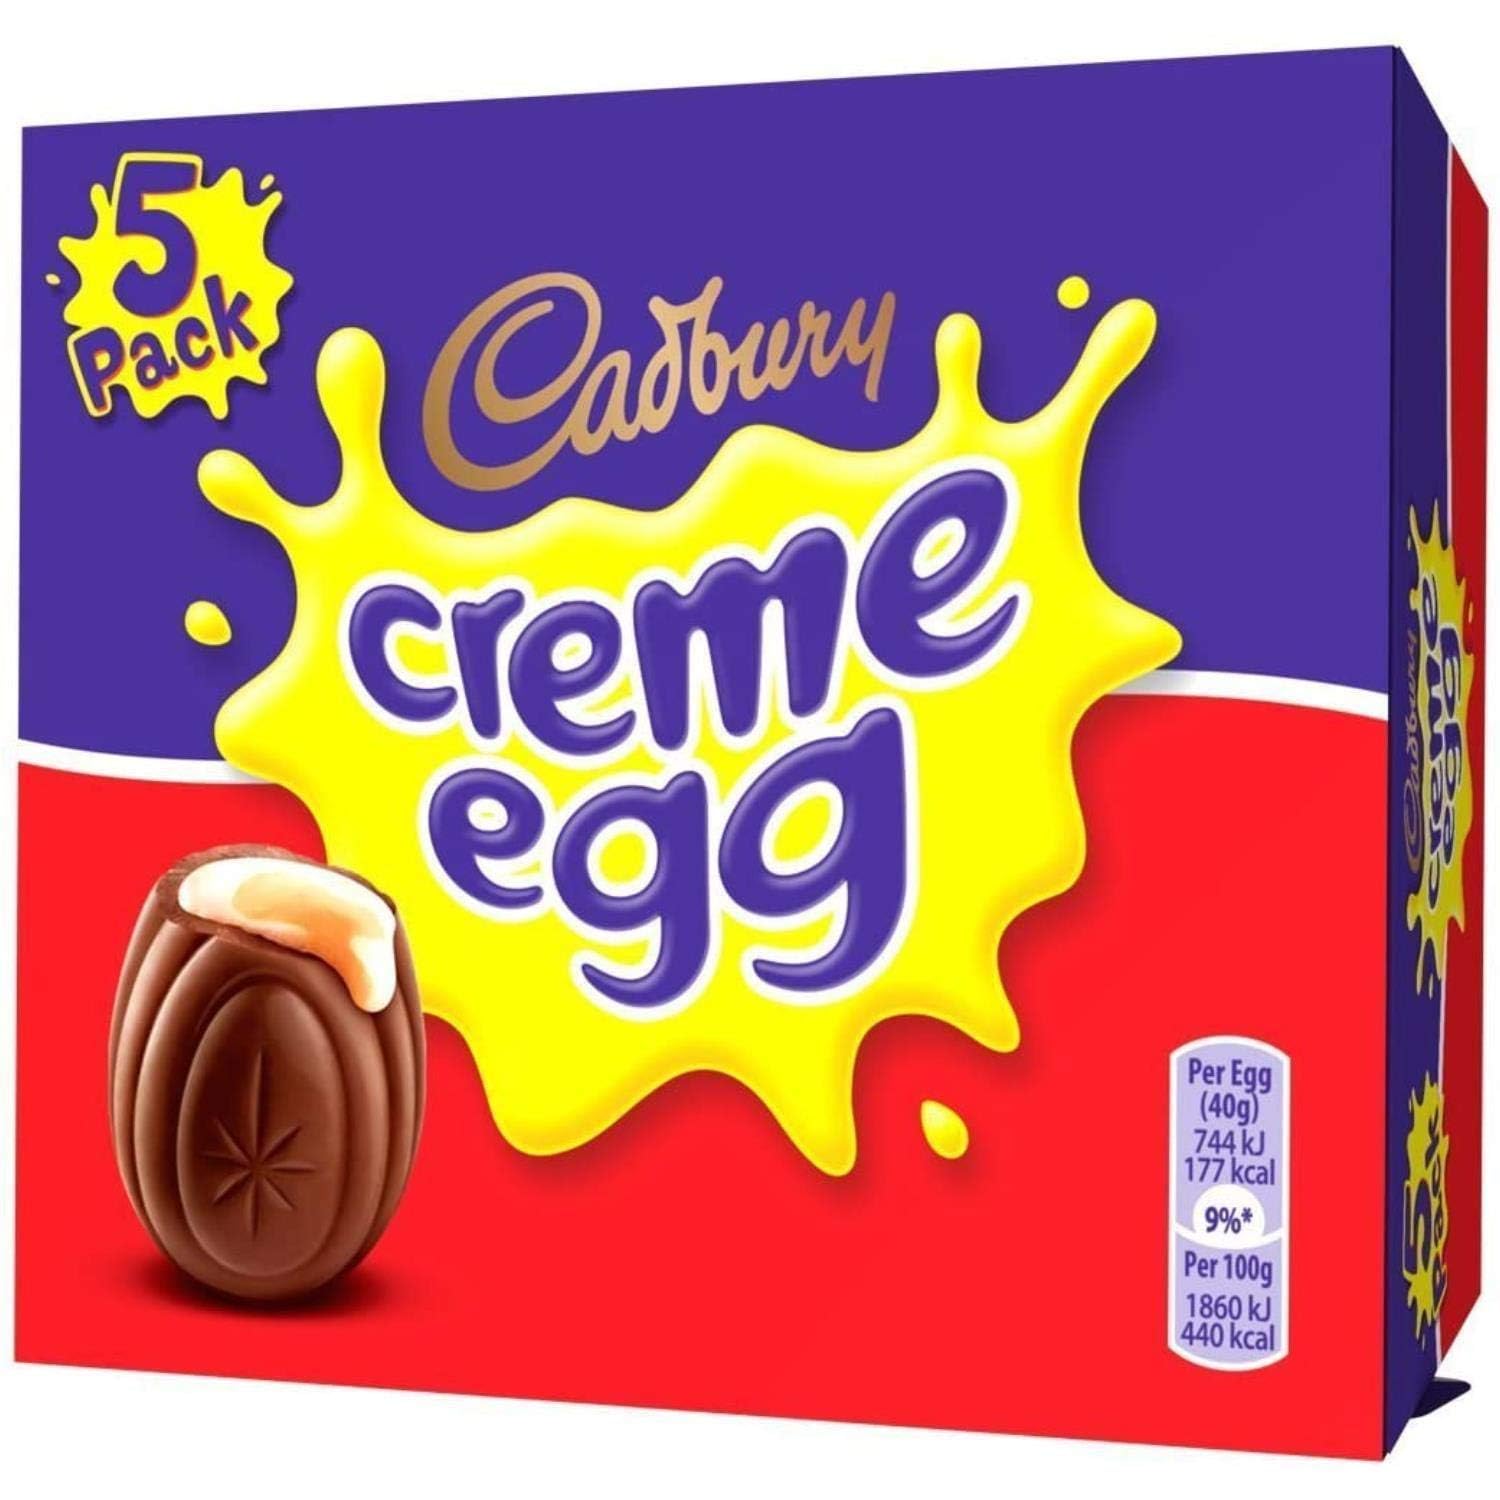 Cadbury Creme Egg (Pack of 5, 1 Box)